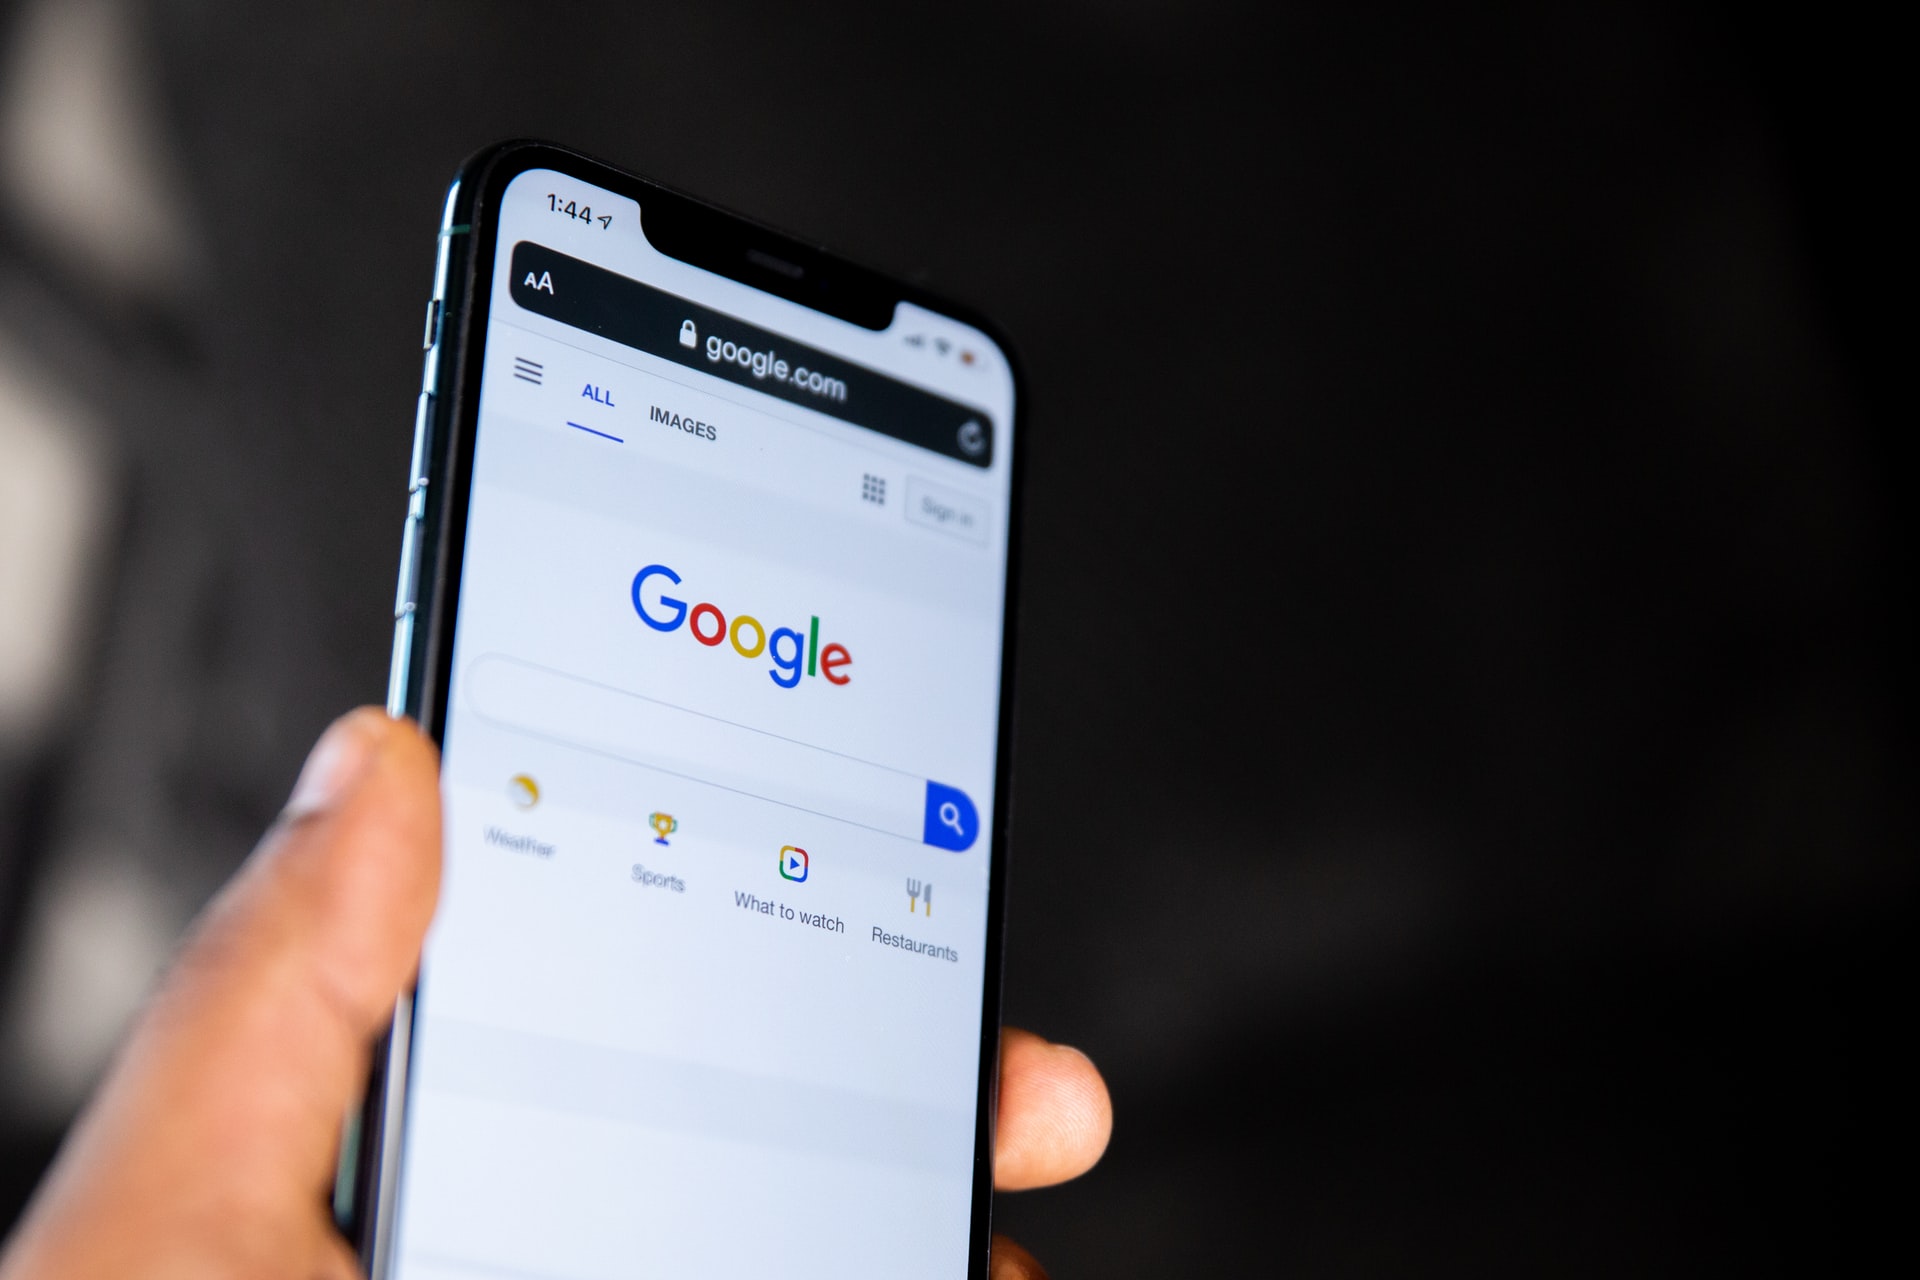 Imagem mostra um smartphone segurado em uma mão, com a tela inicial do Google aberta em seu display